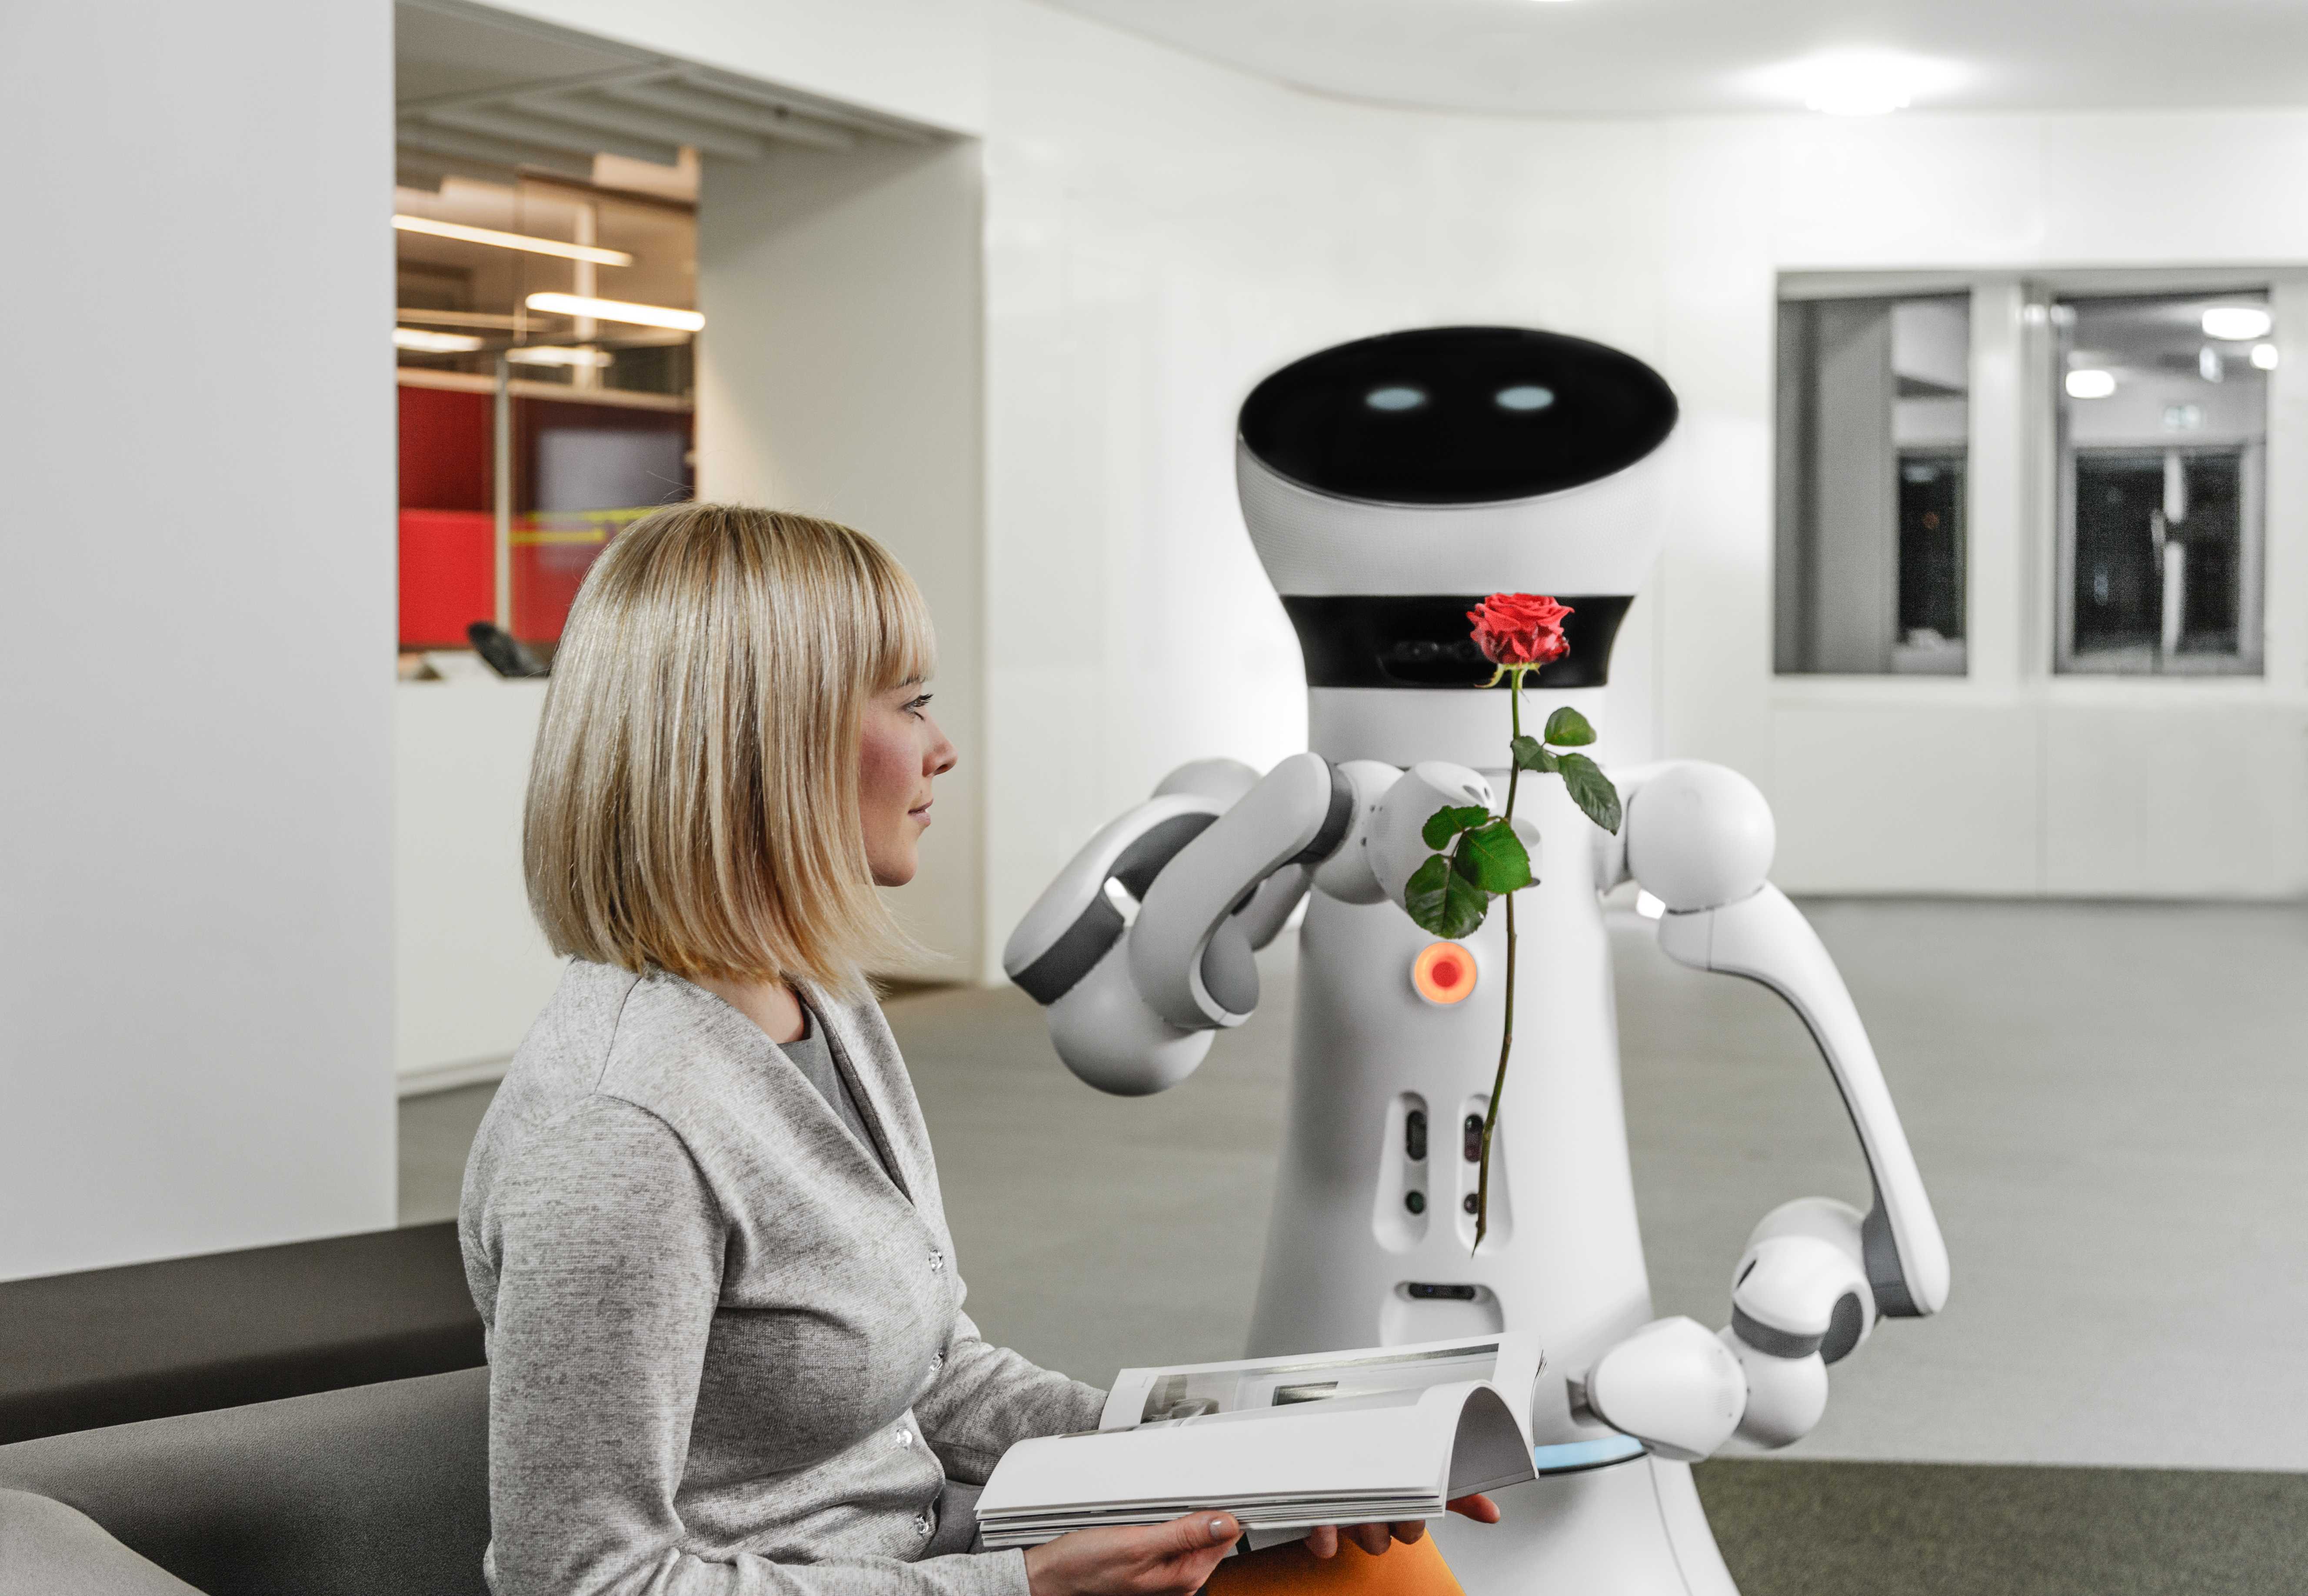 Робот выполняет любые. Робот. Домашние роботы. Домашние роботы помощники. Роботы в быту.